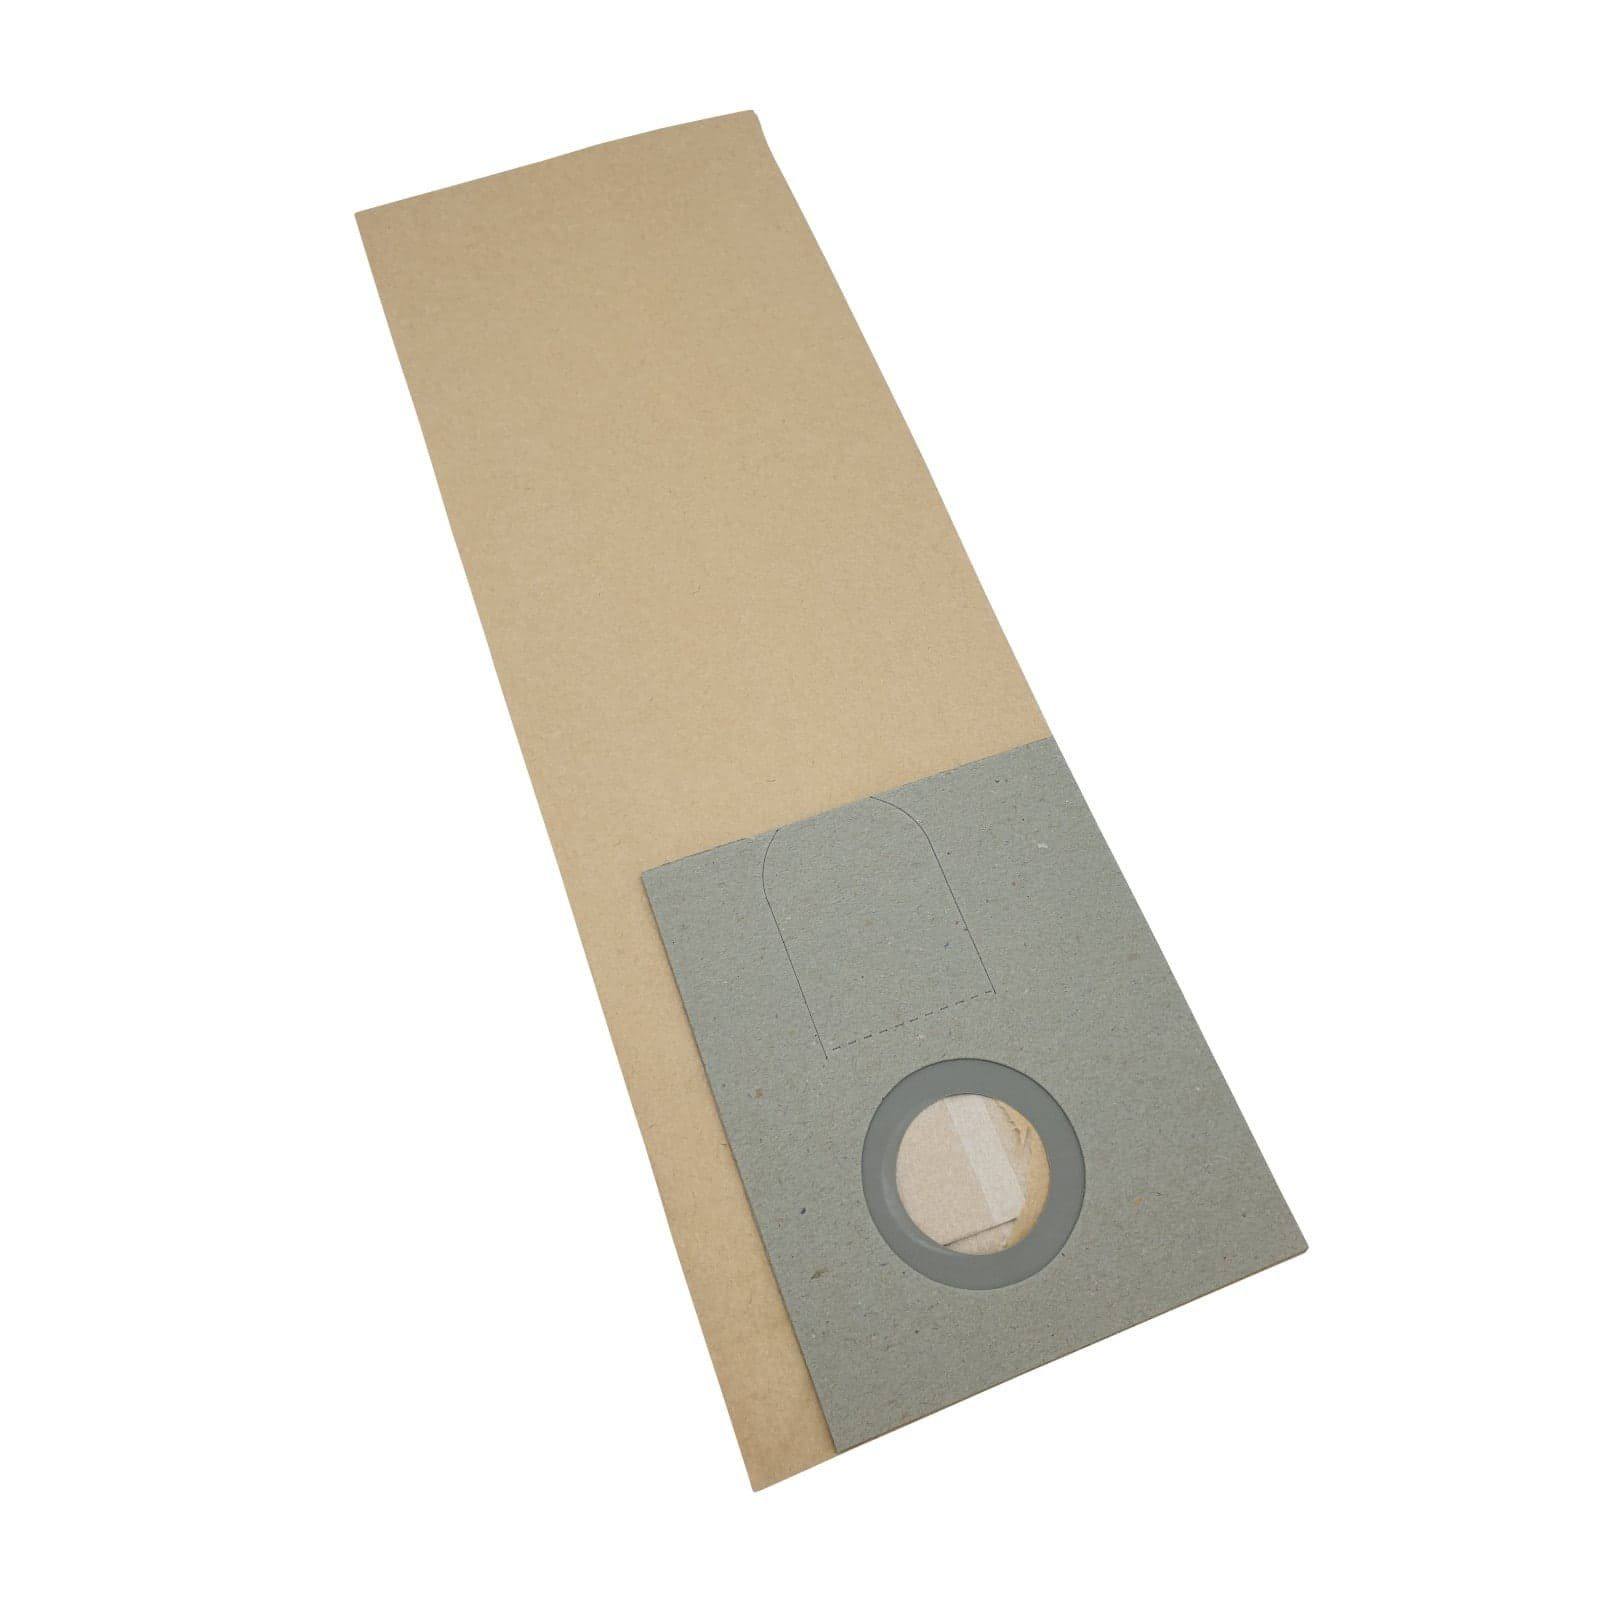 Reinica Staubsaugerbeutel passend für Clean a la Card BS 450, 10er-Pack Staubbeutel Saugerbeutel Beutel Filtertüten